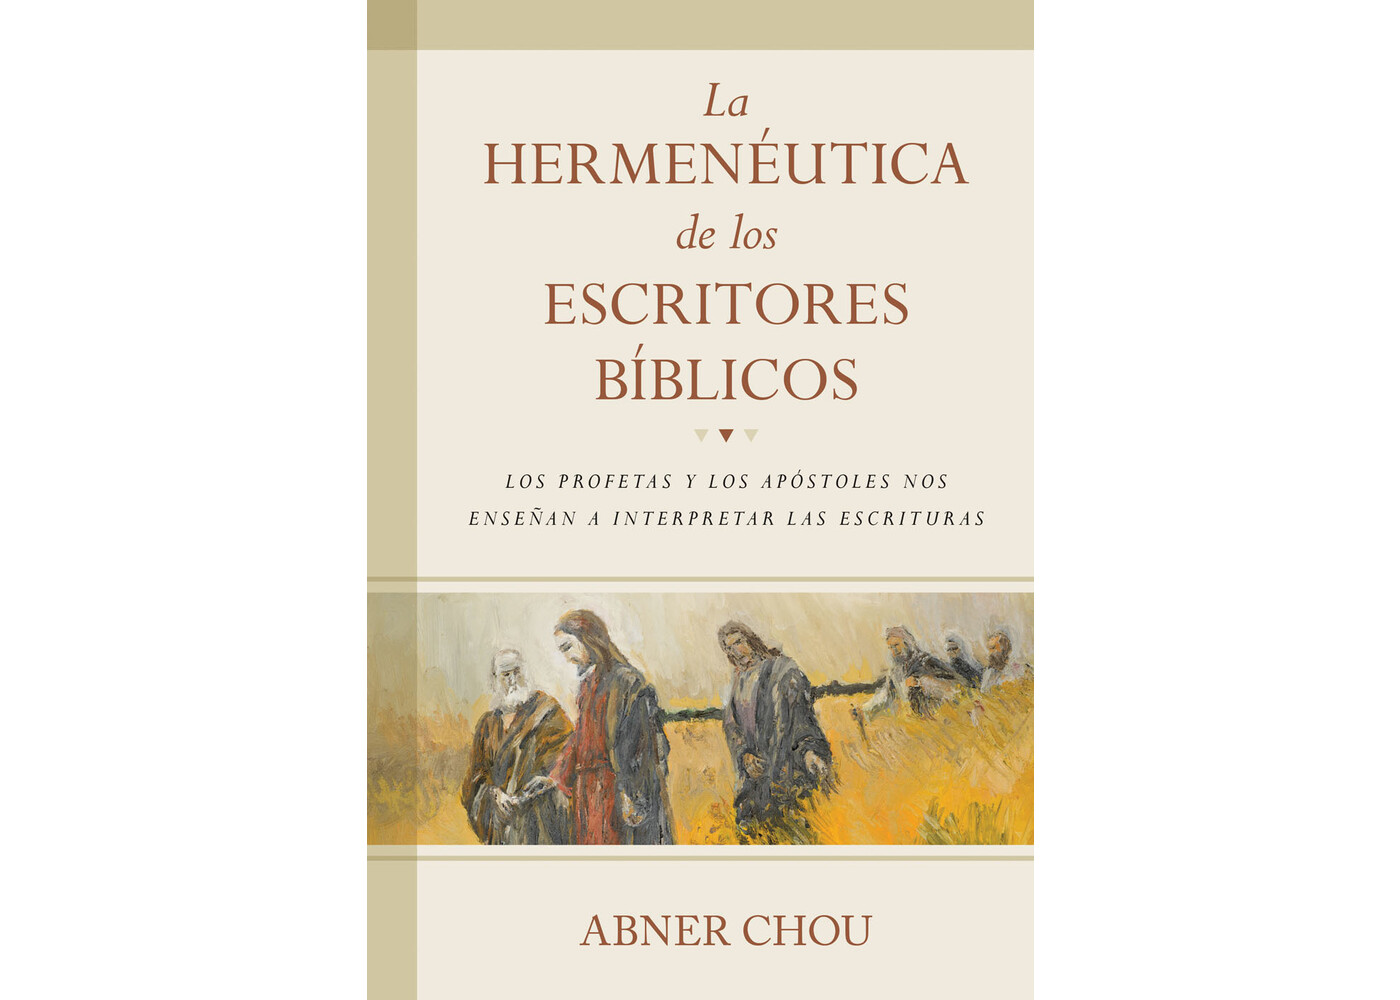 PORTAVOZ LA HERMENEUTICA DE LOS ESCRITORES BIBLICOS: LOS PROFETAS Y LOS APOSTOLES NOS ENSENAN A INTERPRETAR LAS ESCRITURAS